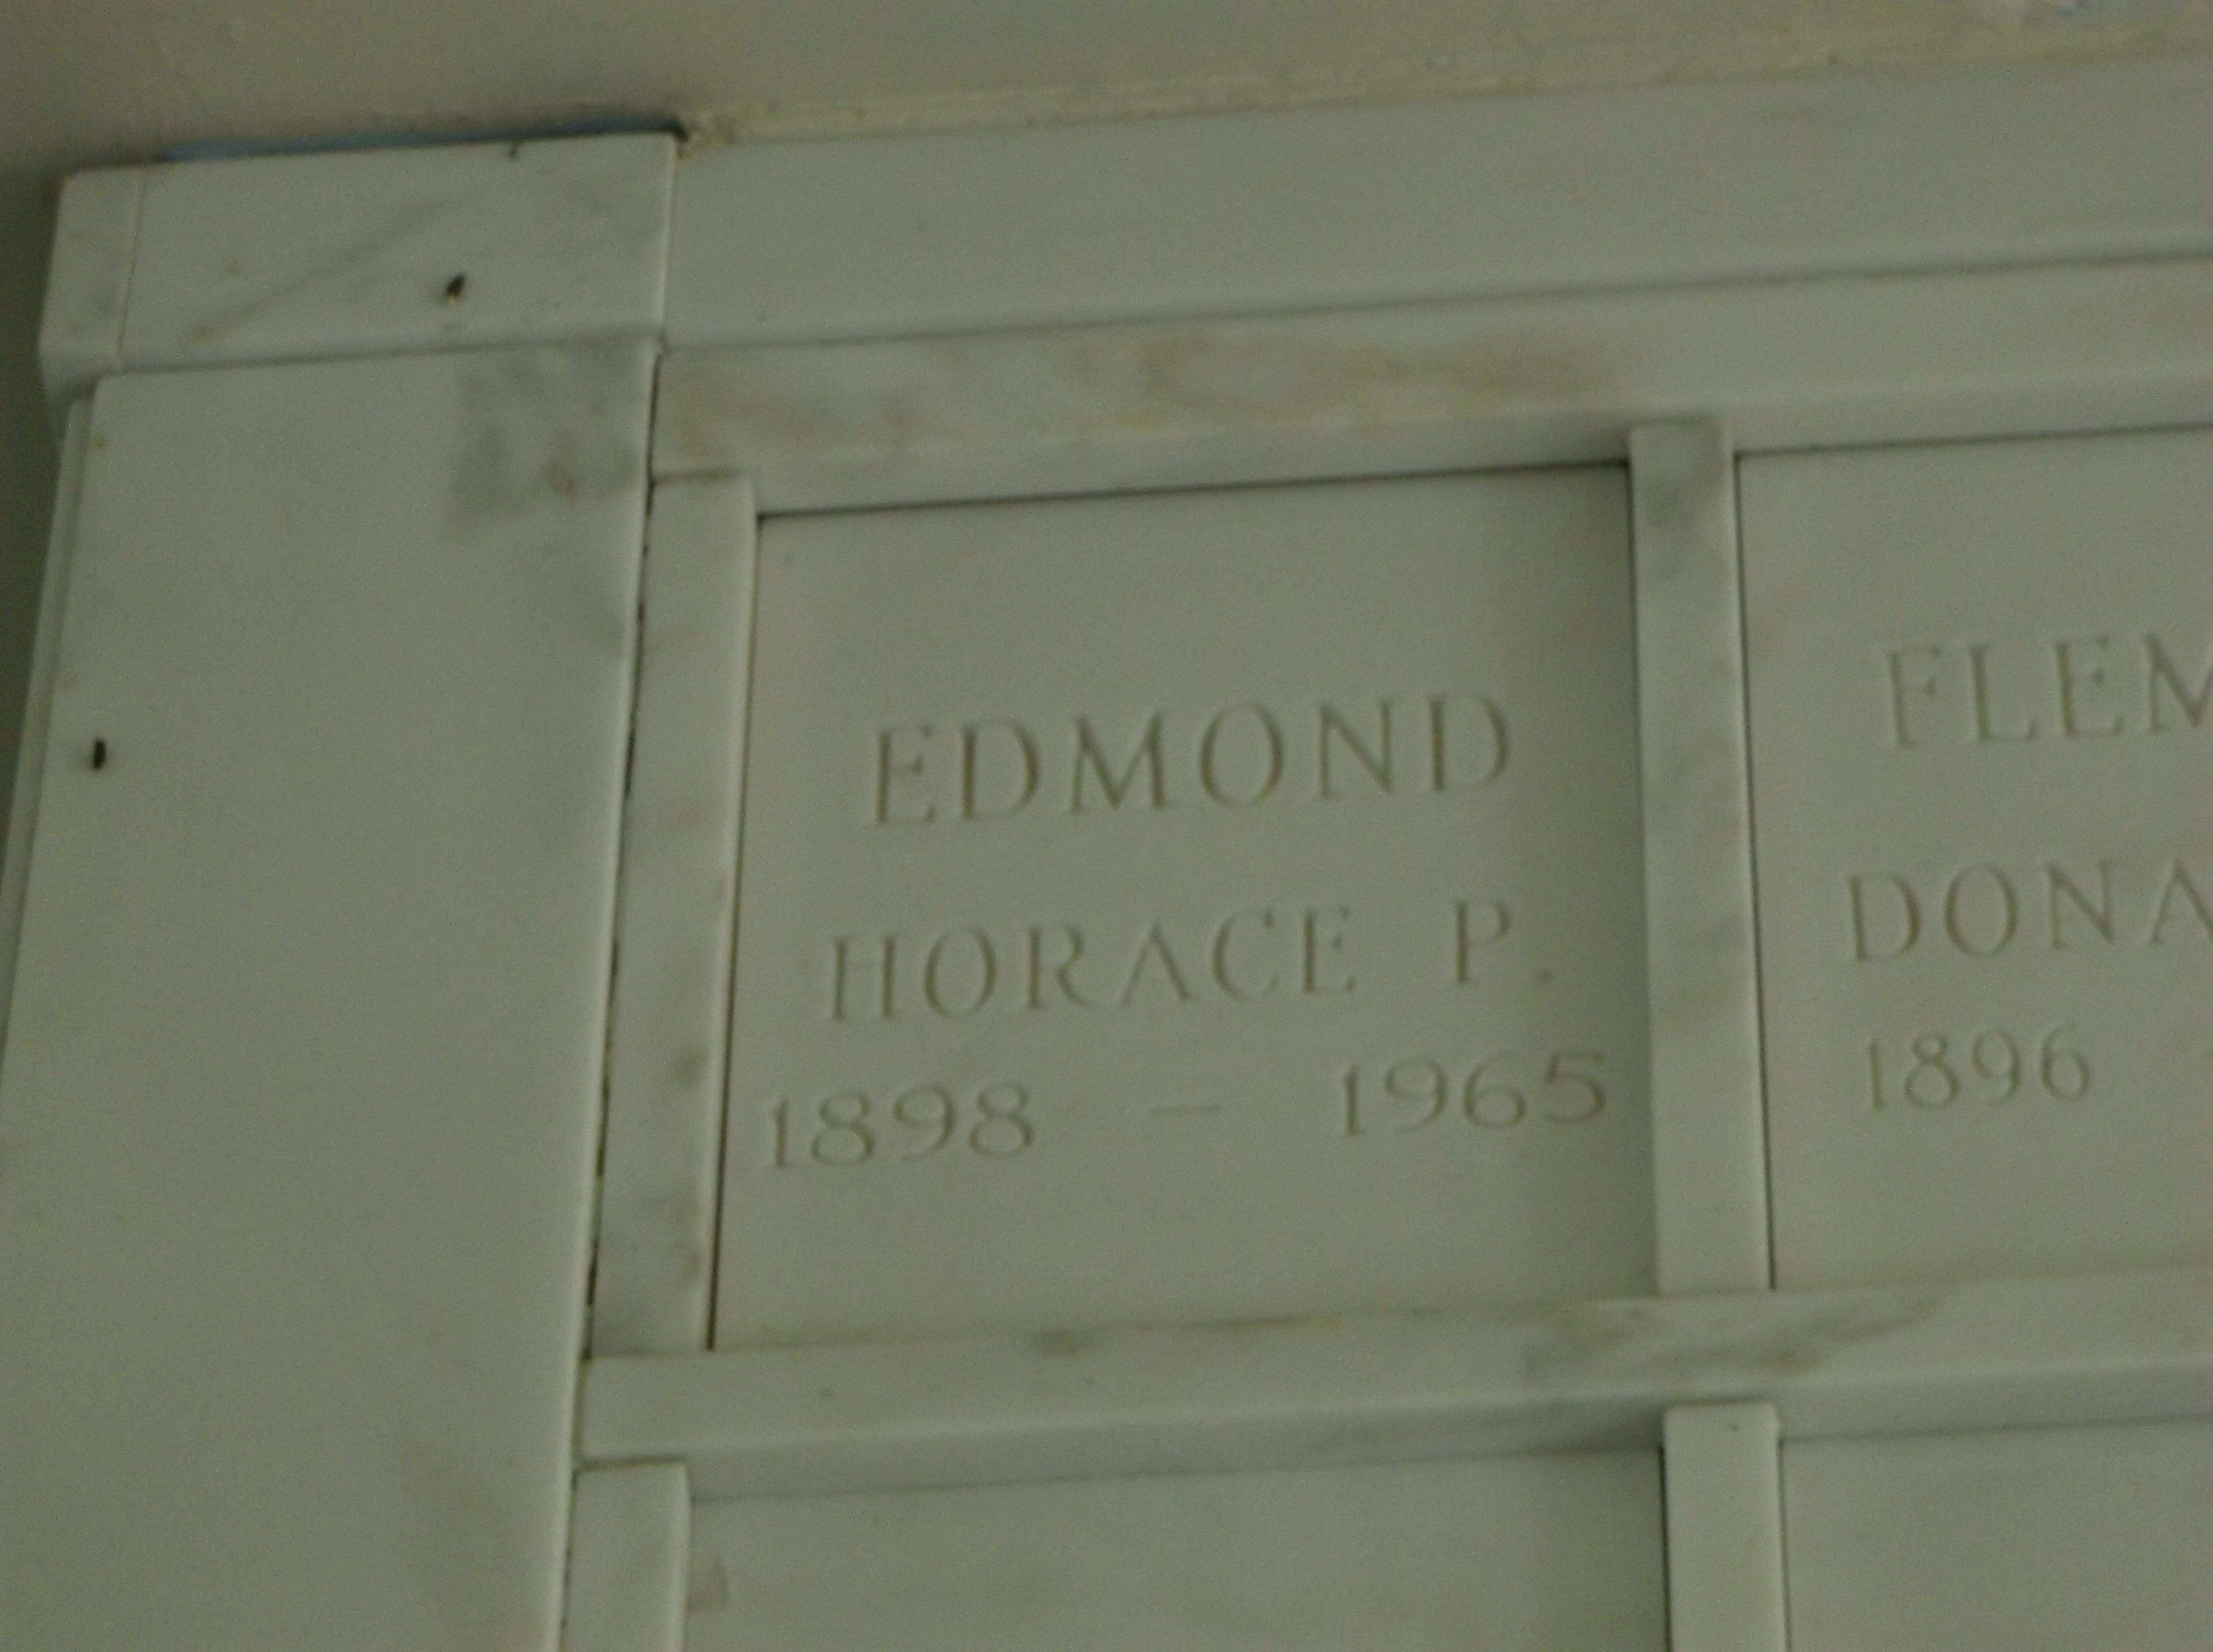 Horace P Edmond